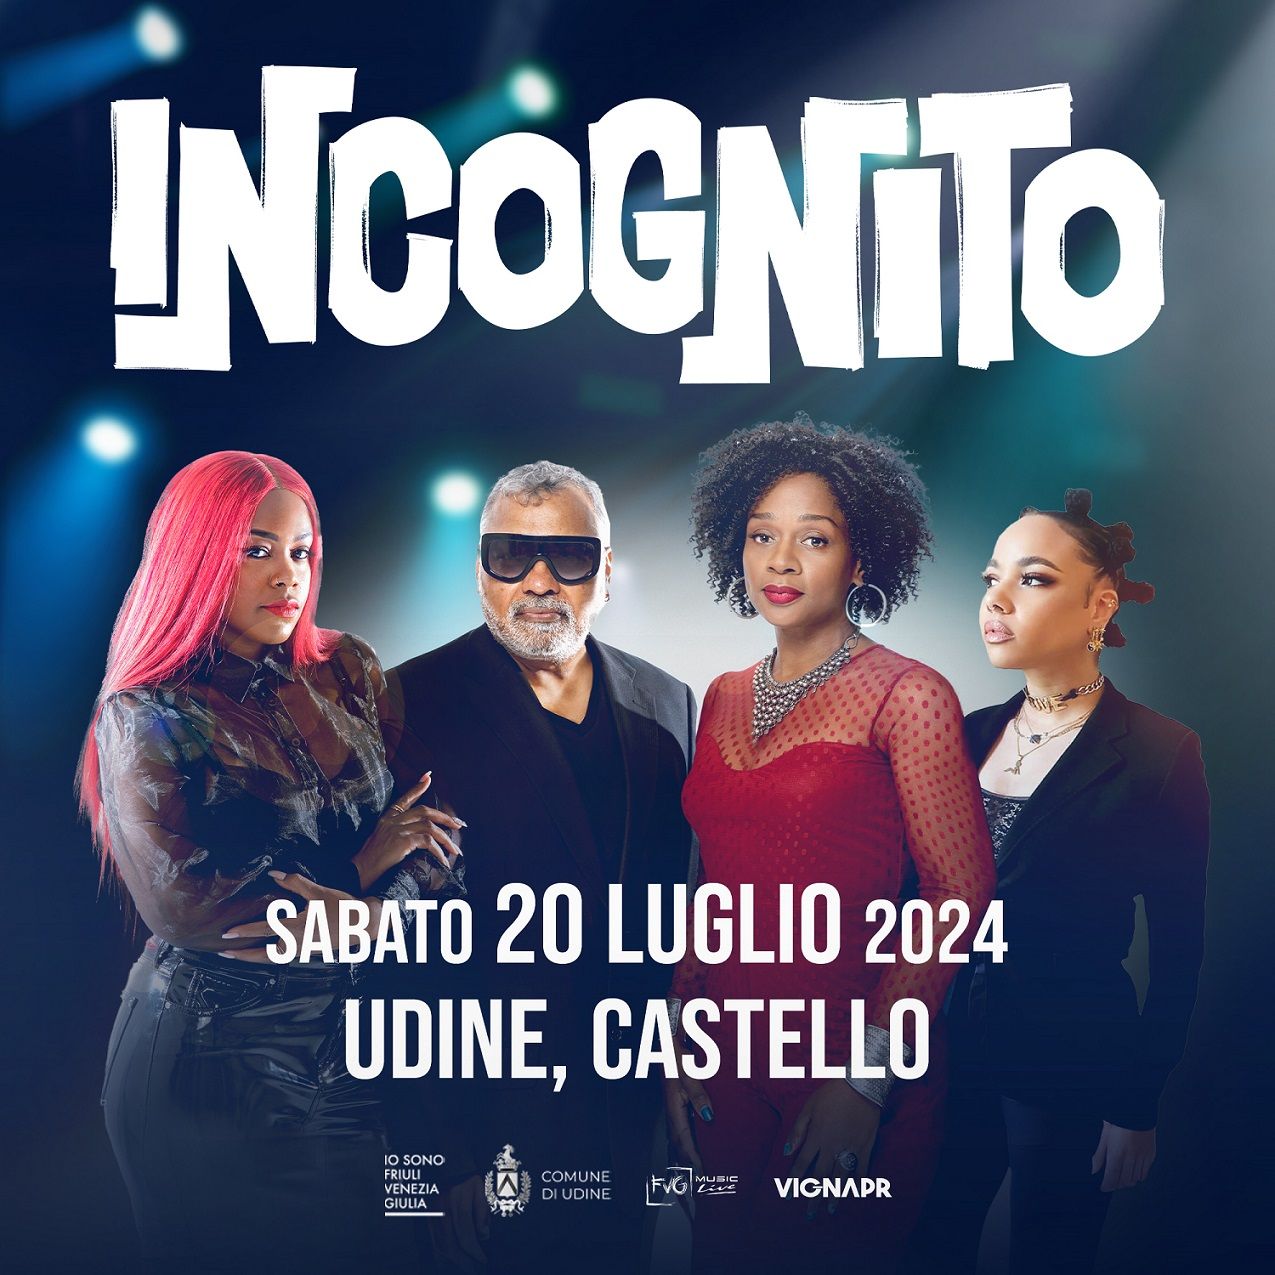 SABATO 20 LUGLIO gli INCOGNITO in concerto al Castello di Udine chiudono la rassegna di Fvg Music Live & VignaPR